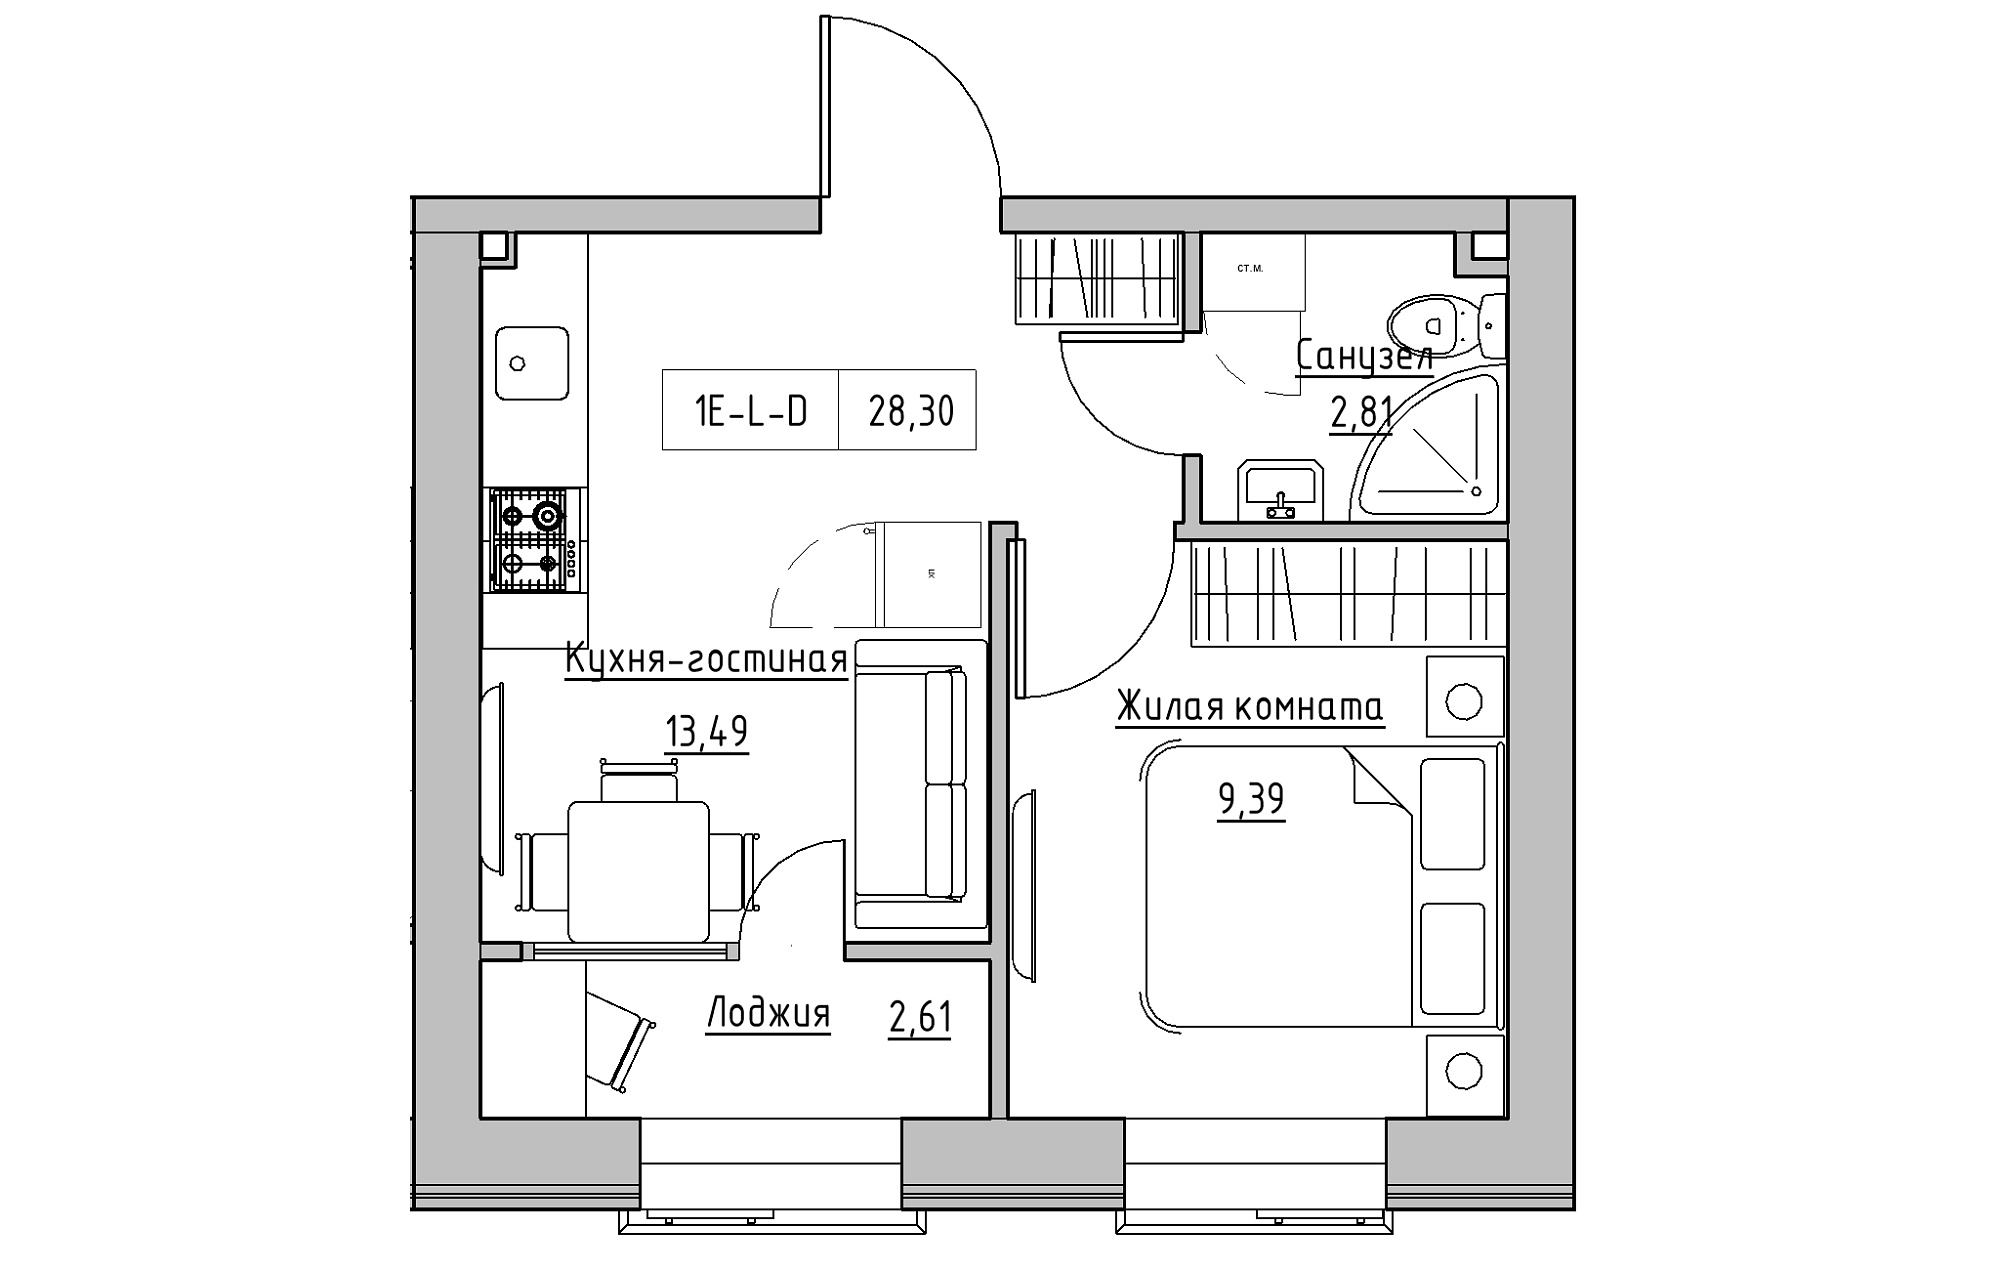 Планировка 1-к квартира площей 28.3м2, KS-018-03/0001.